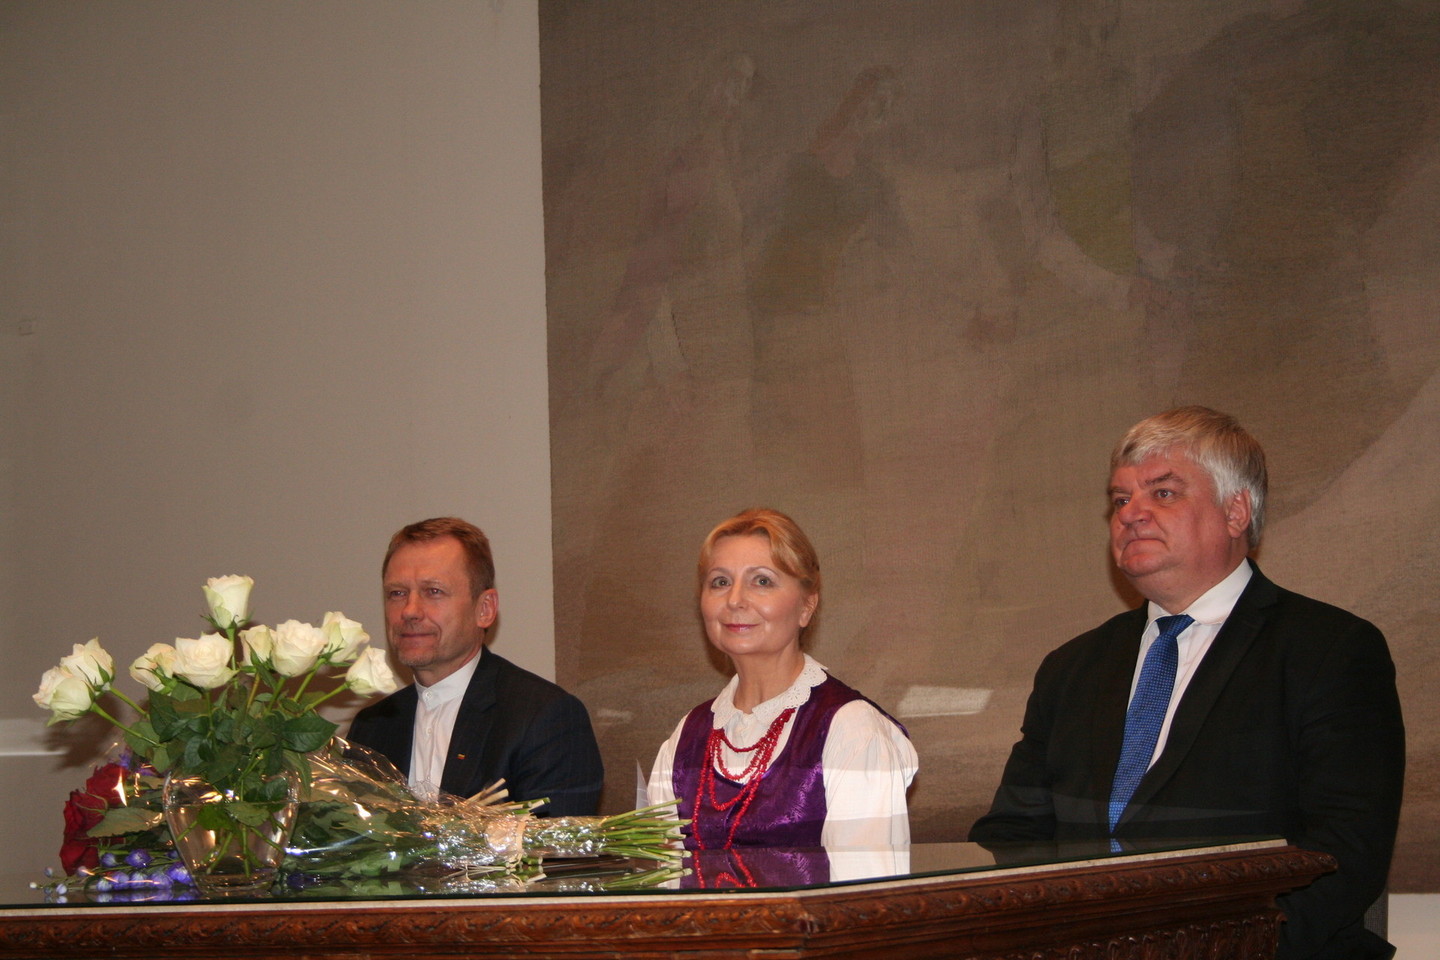 2015 metų valstybinės J.Basanavičiaus premijos laureate tapo etnomuzikologė D.Urbanavičienė.